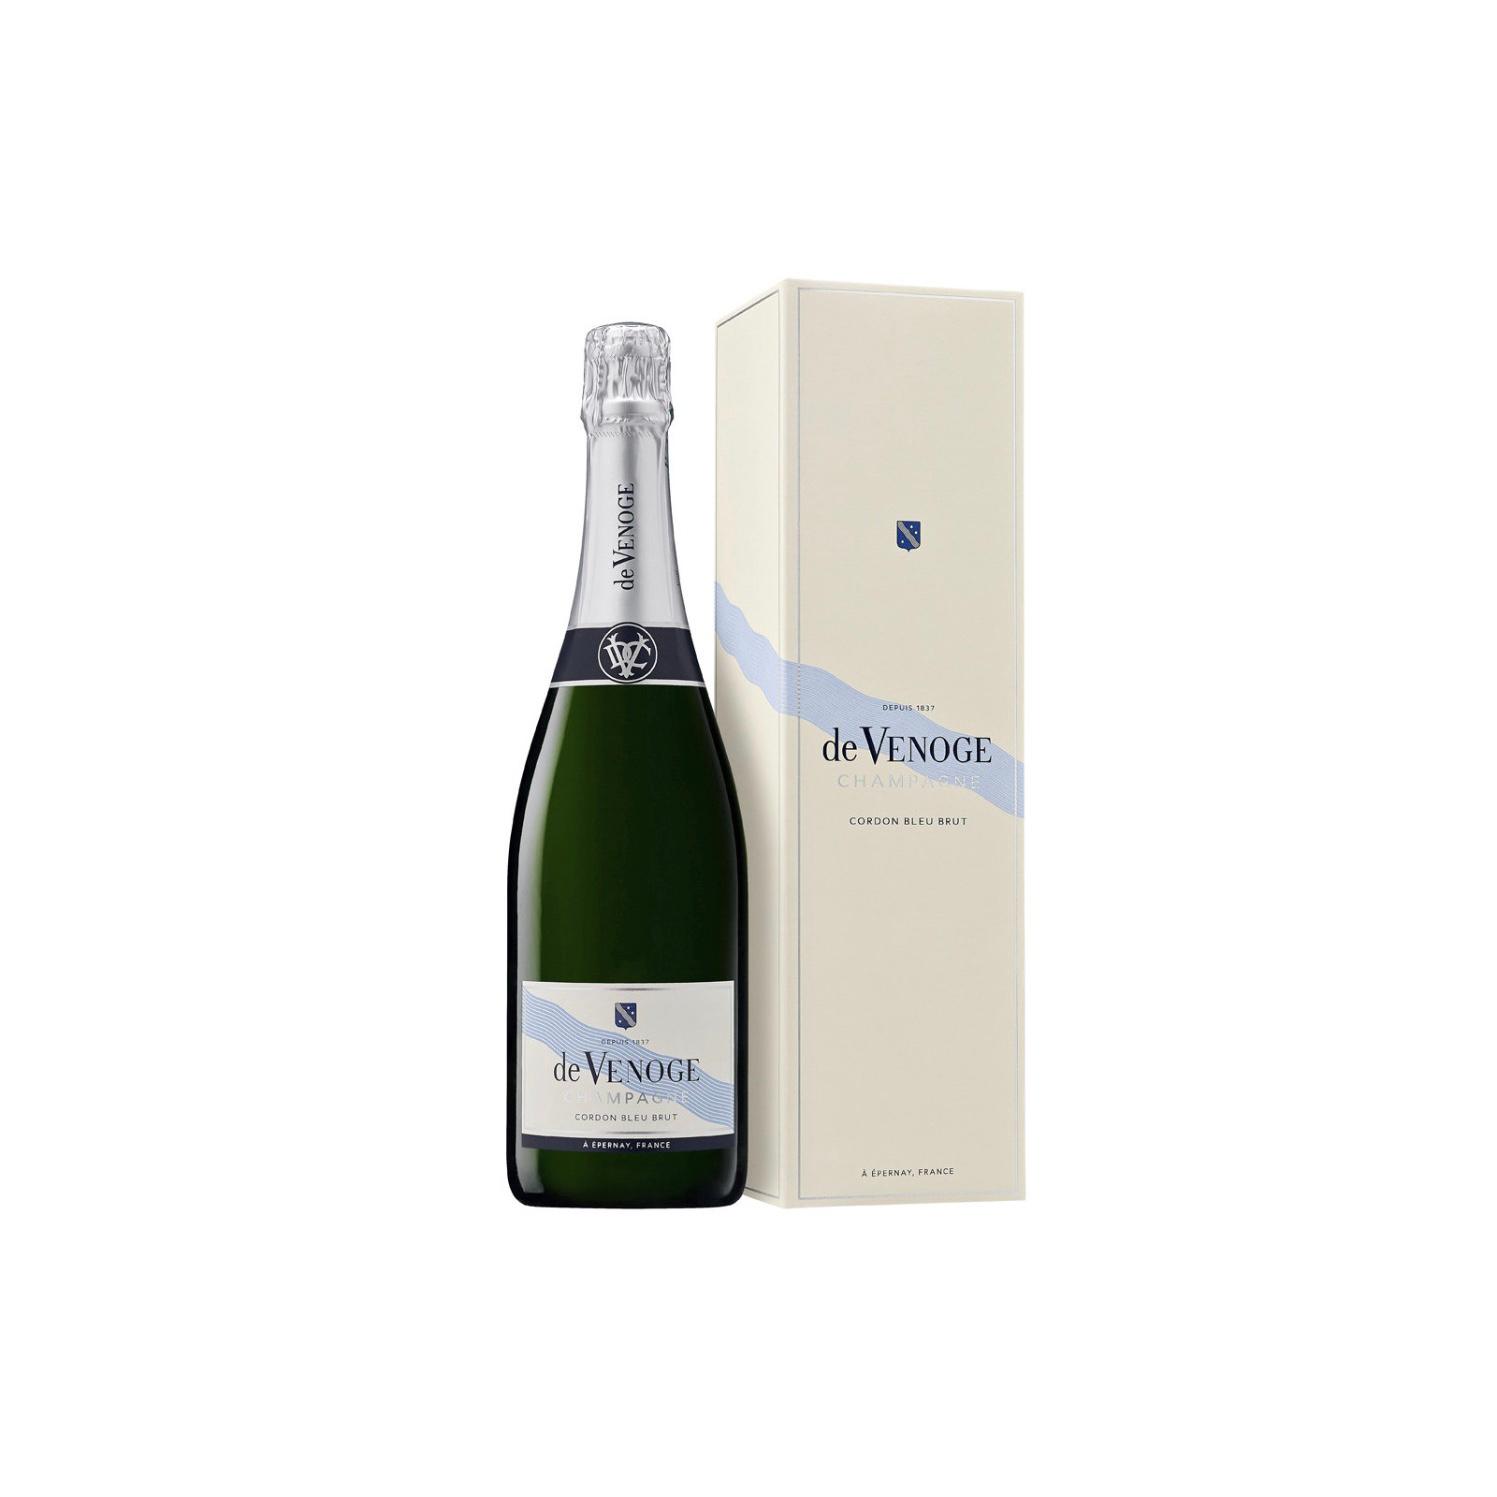 Шампанское двуморье. De Venoge шампанское cordon bleu Brut. Вино Champagne de Venoge. Вино Champagne de Venoge Brut. Вино Champagne de Venoge 0.75 Cord.